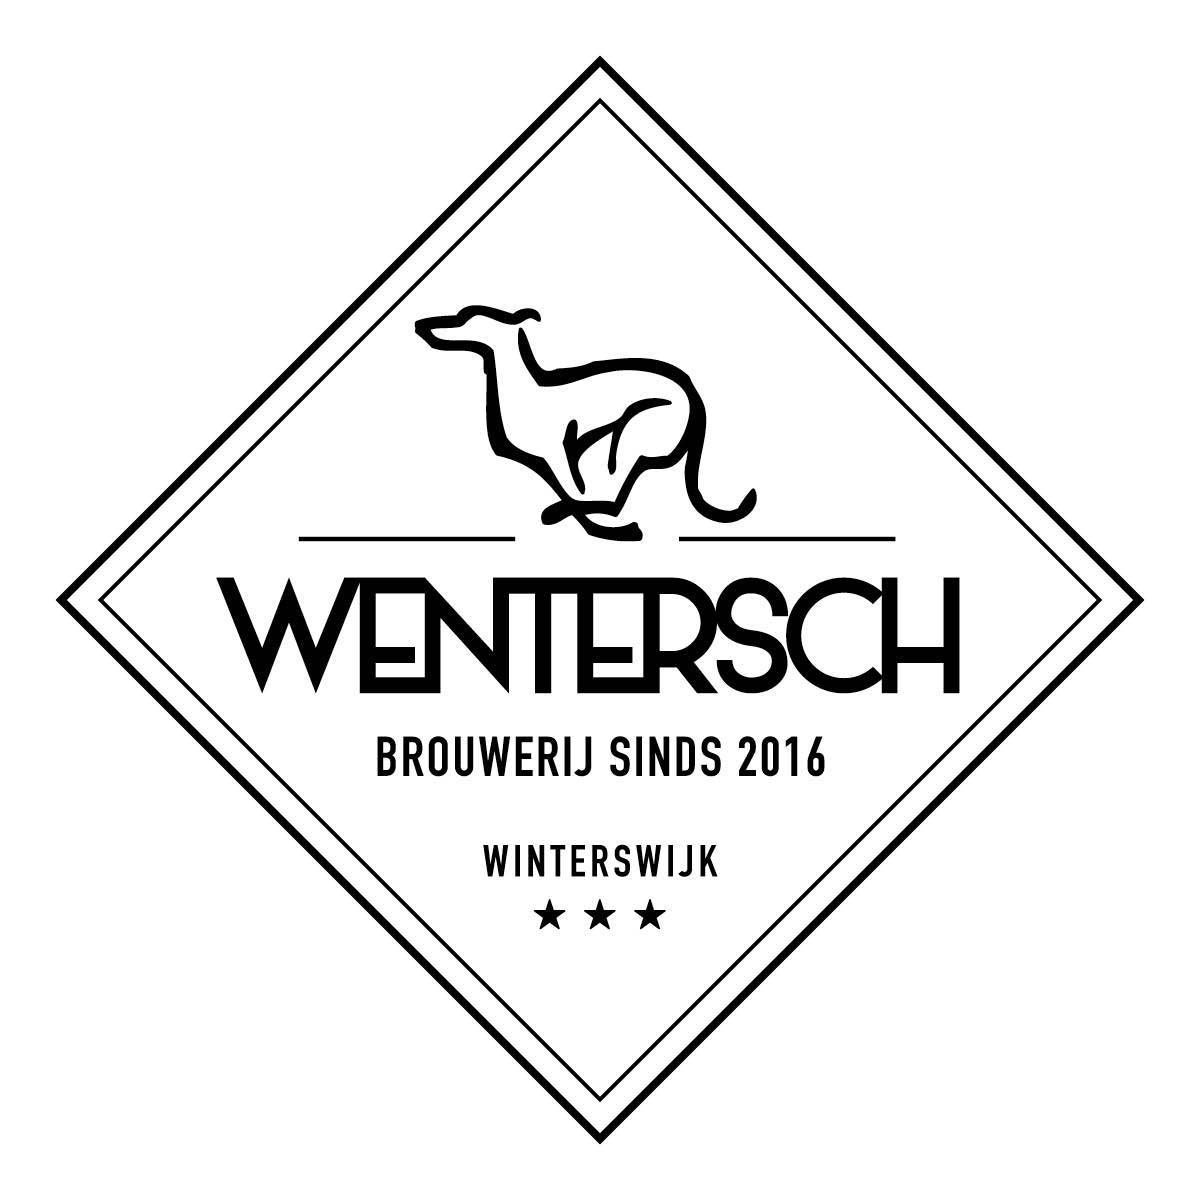 Bierbrouwerij Wentersch